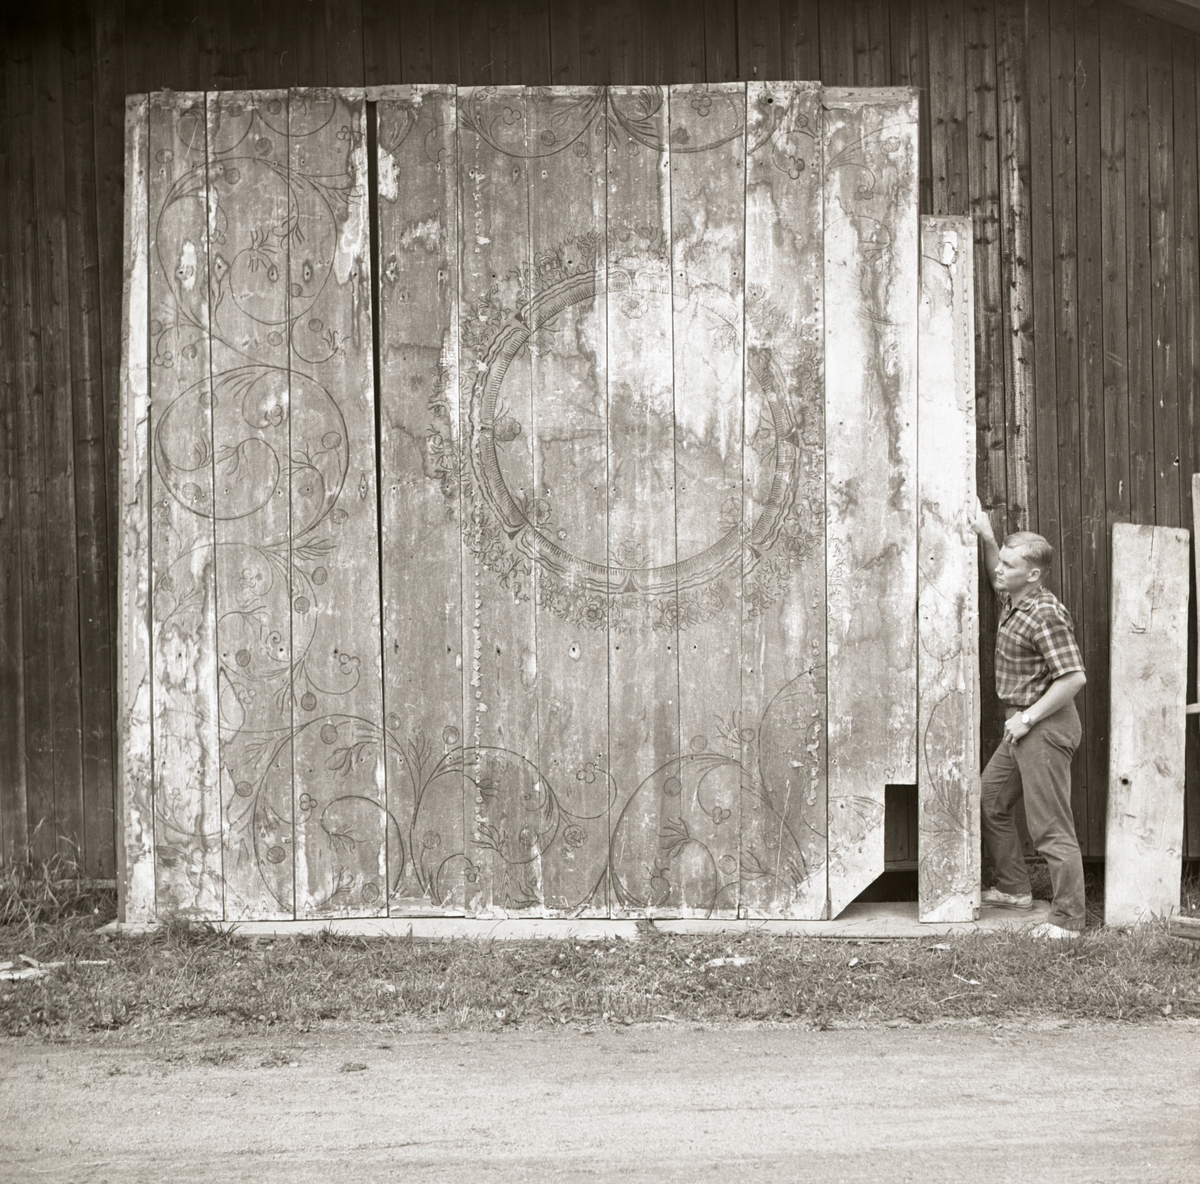 En man står bredvid målade innertaksbrädor vilka är lutade mot en vägg, 1968-1969.